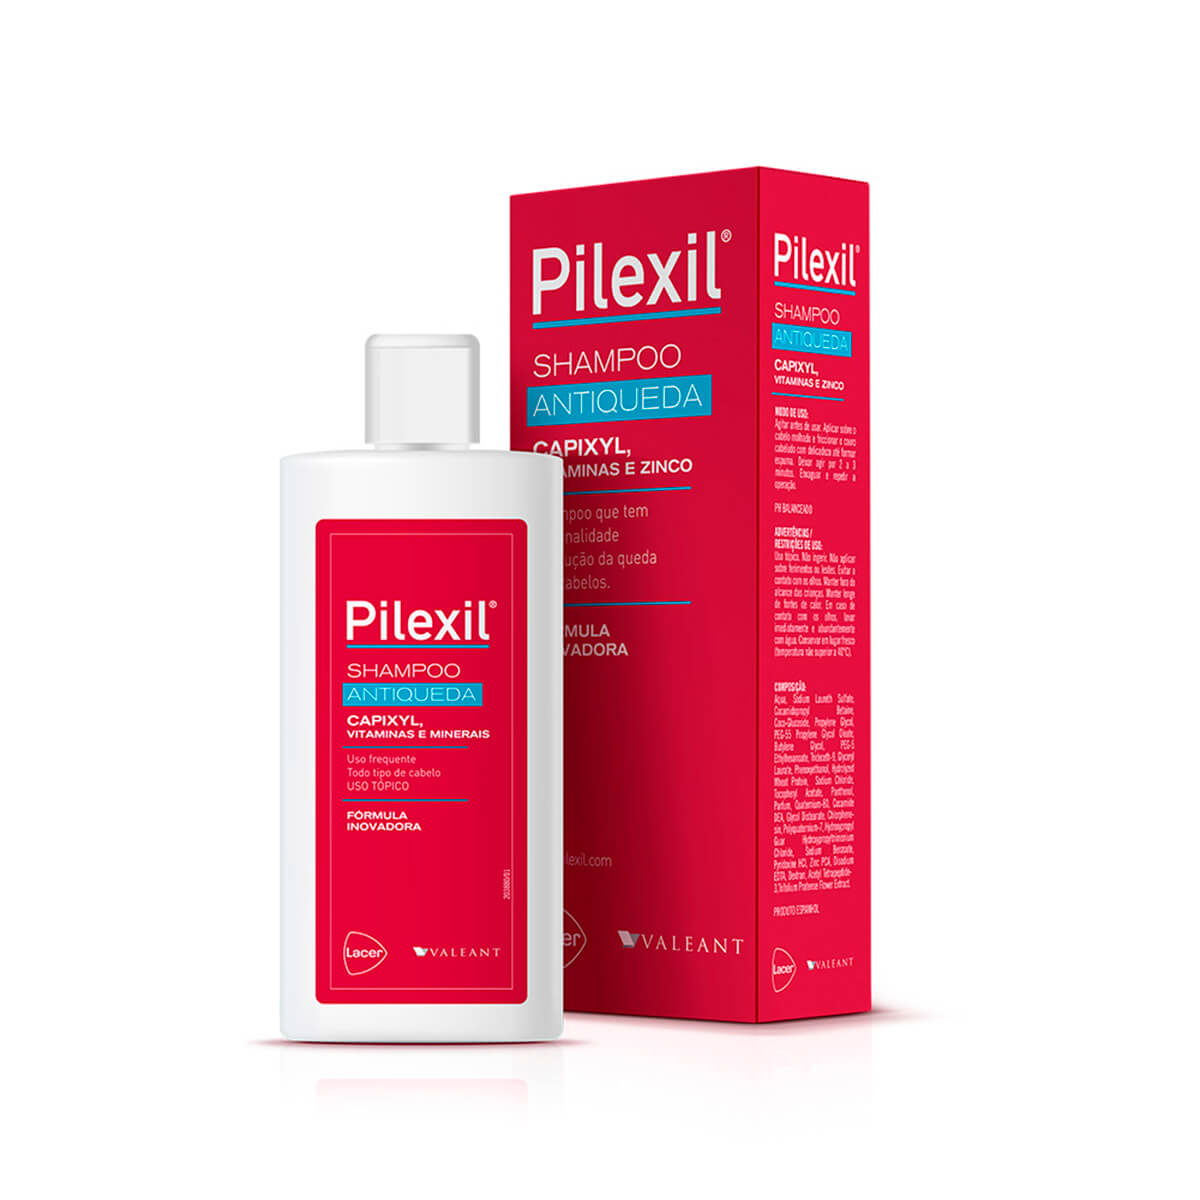 Shampoo Antiqueda Pilexil com 150ml